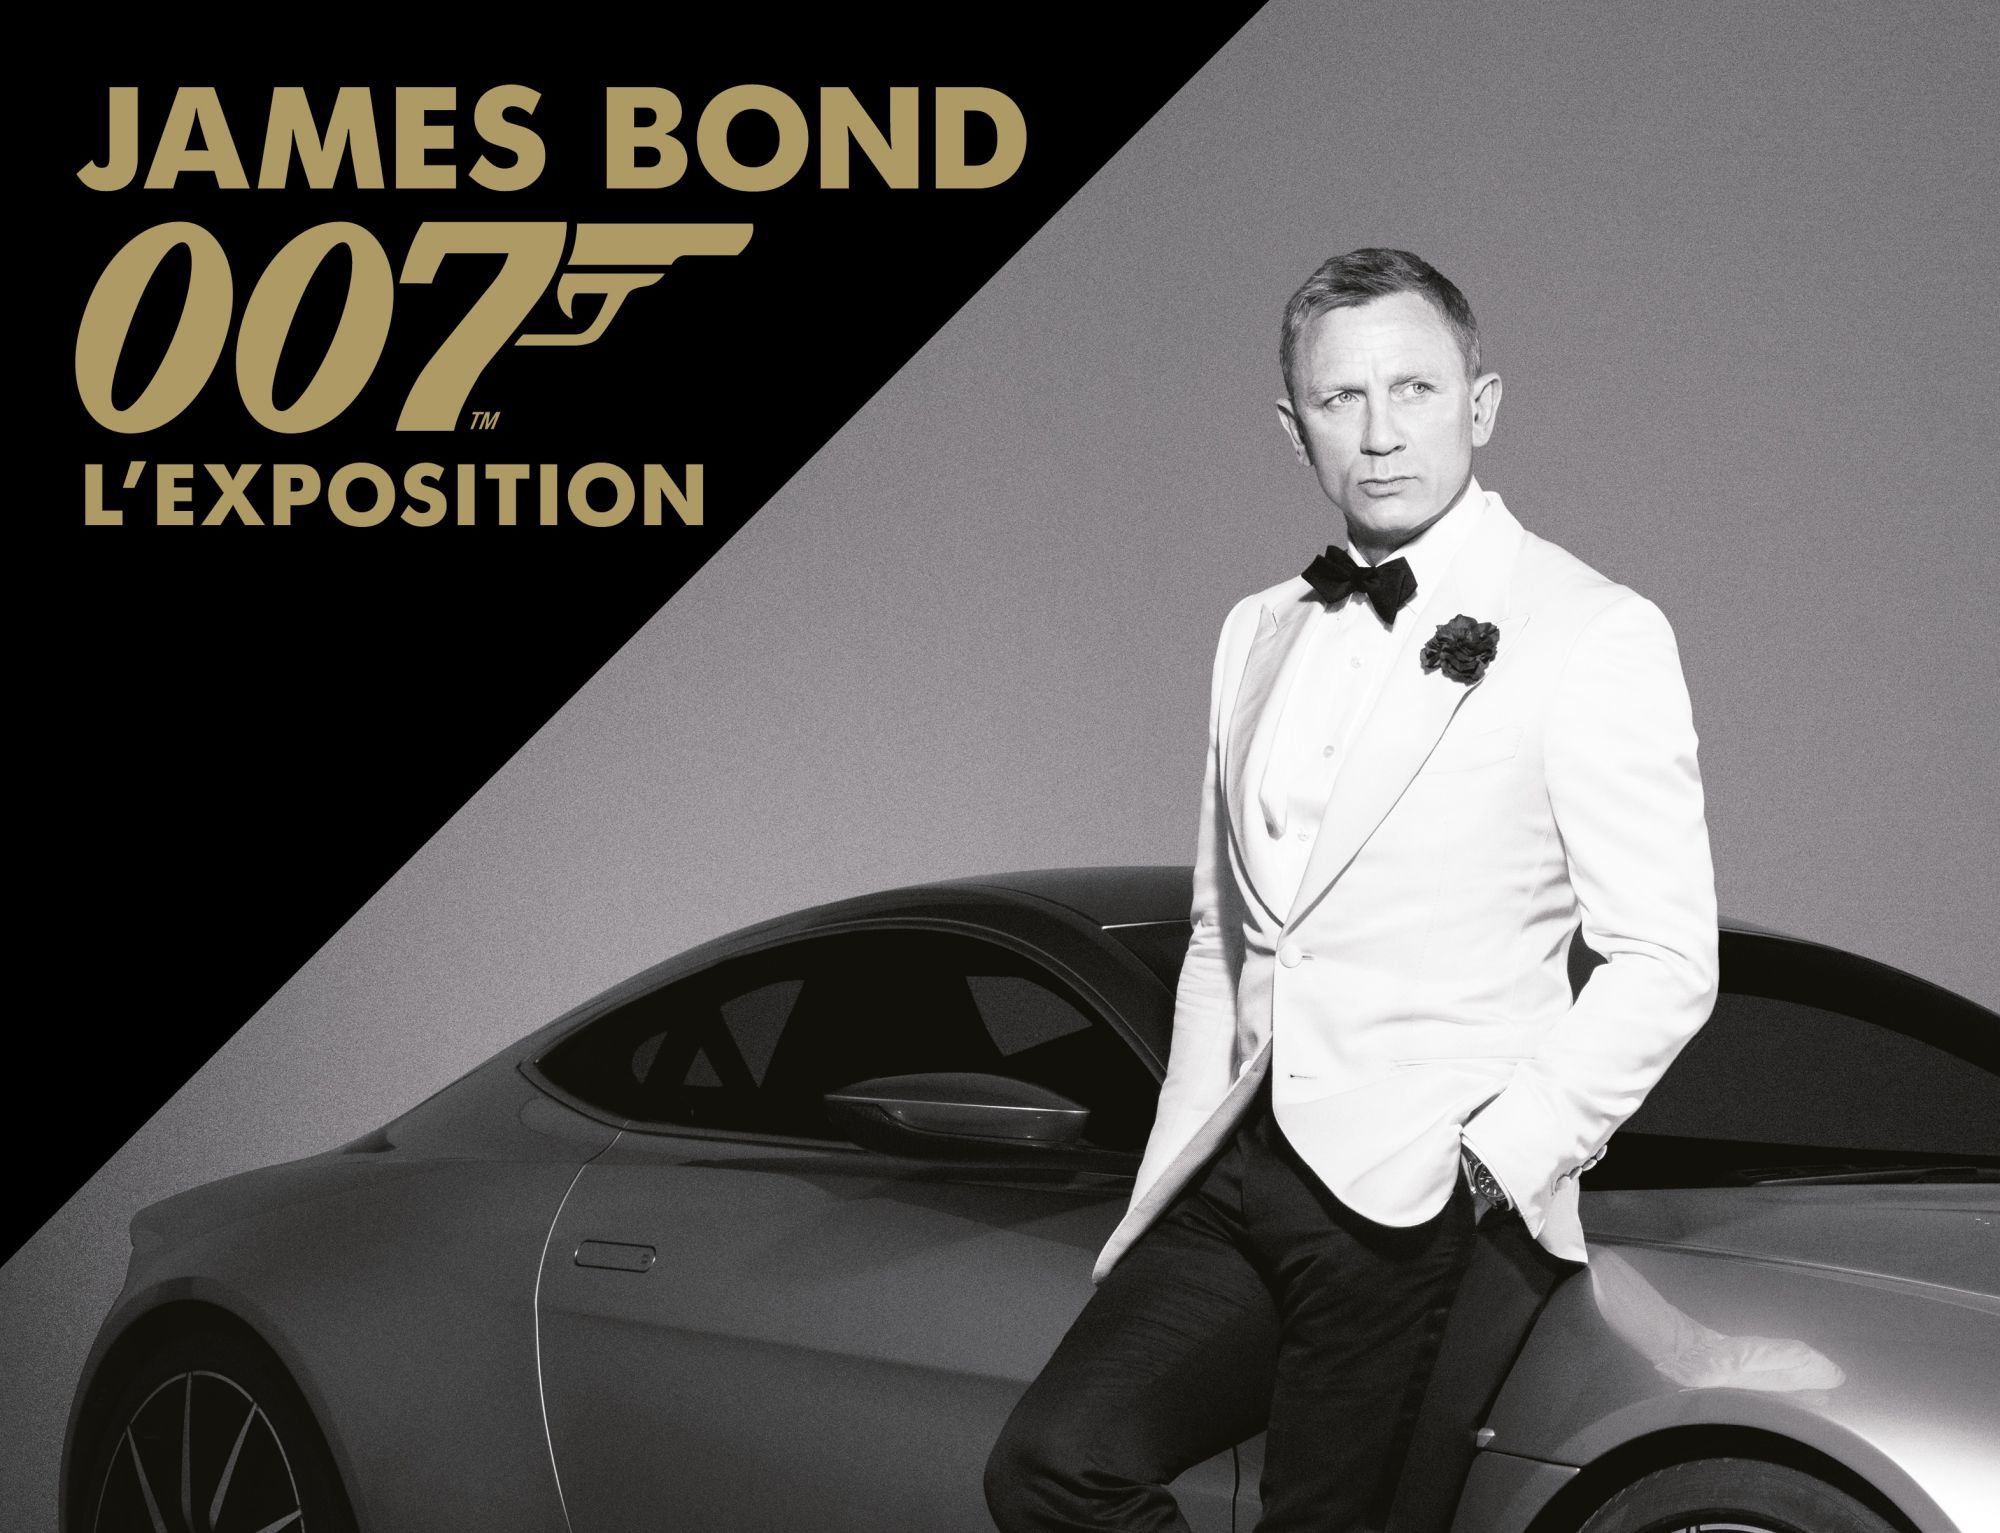 Affiche officielle de l'exposition James Bond 007 à la Grande Halle de la Villette